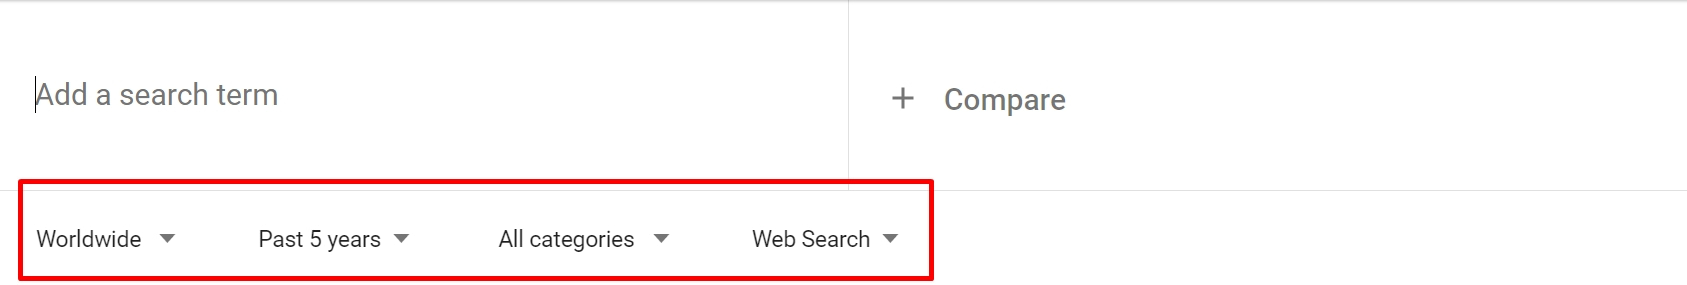 Google 趋势中的搜索选项